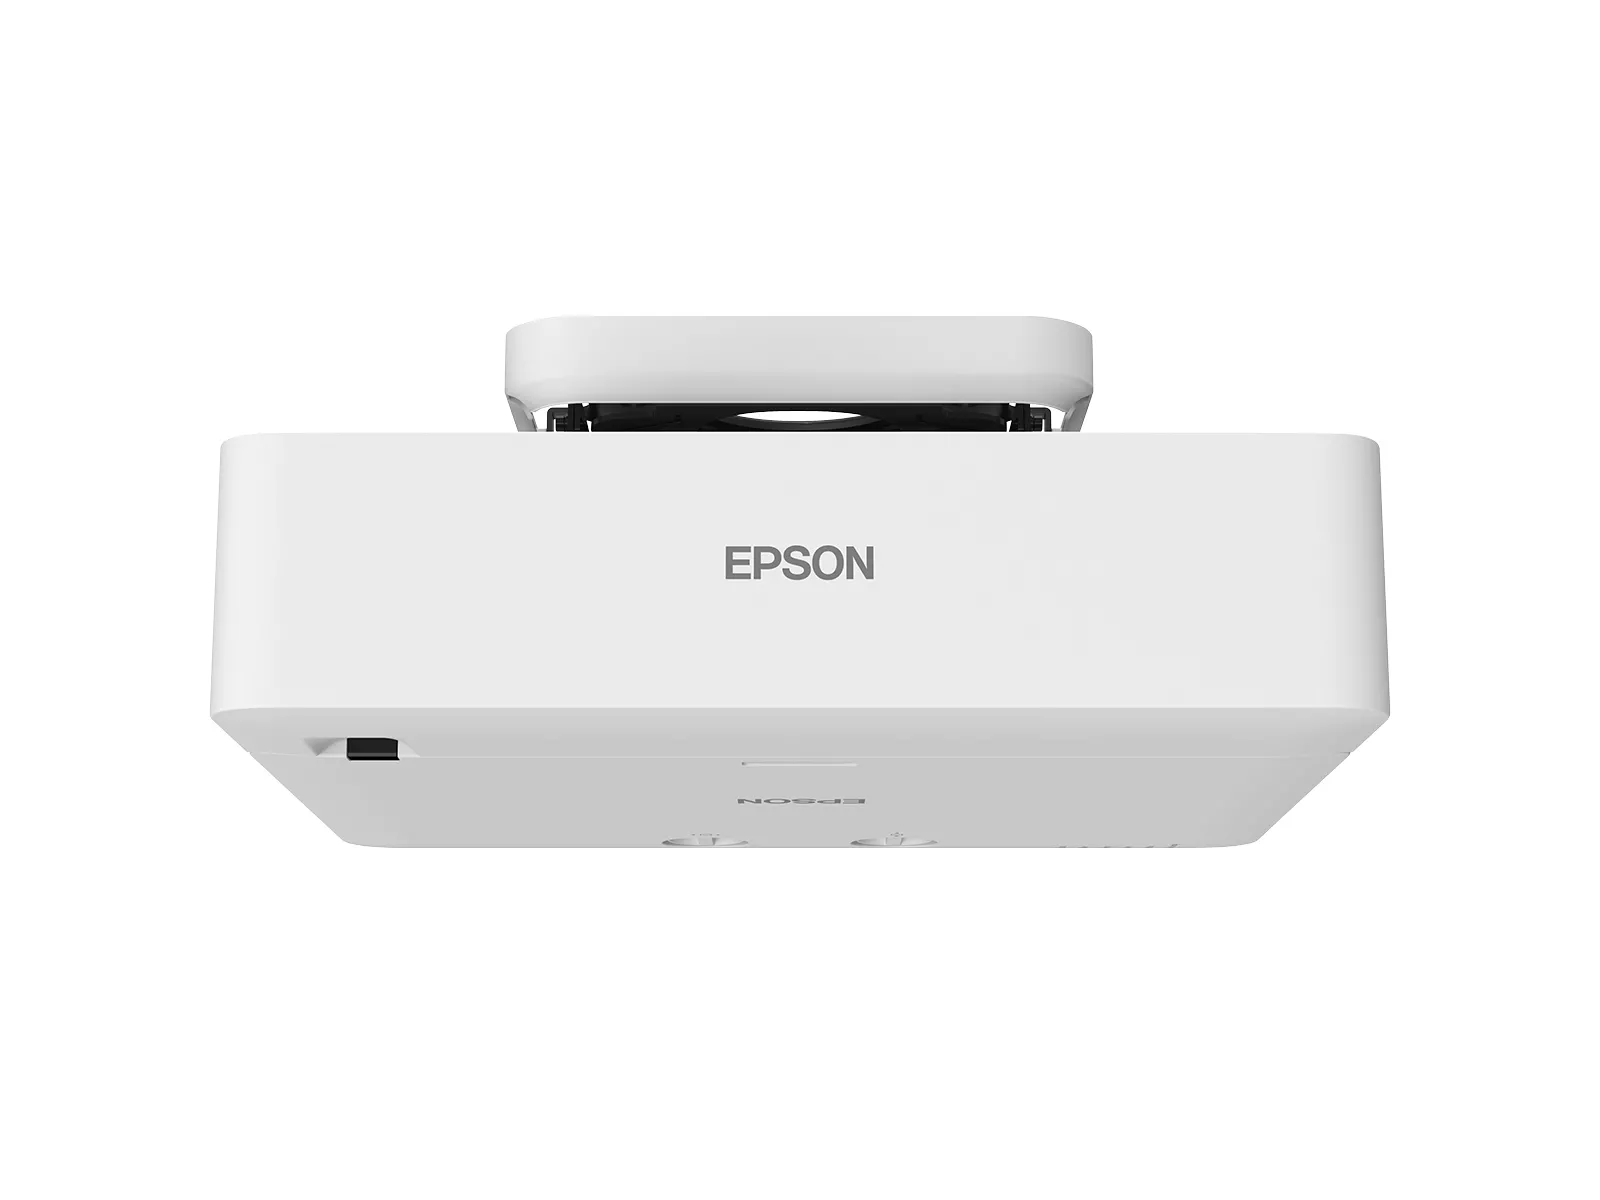 Vente EPSON EB-L770U Projector WUXGA 7000Lm projection ratio Epson au meilleur prix - visuel 8